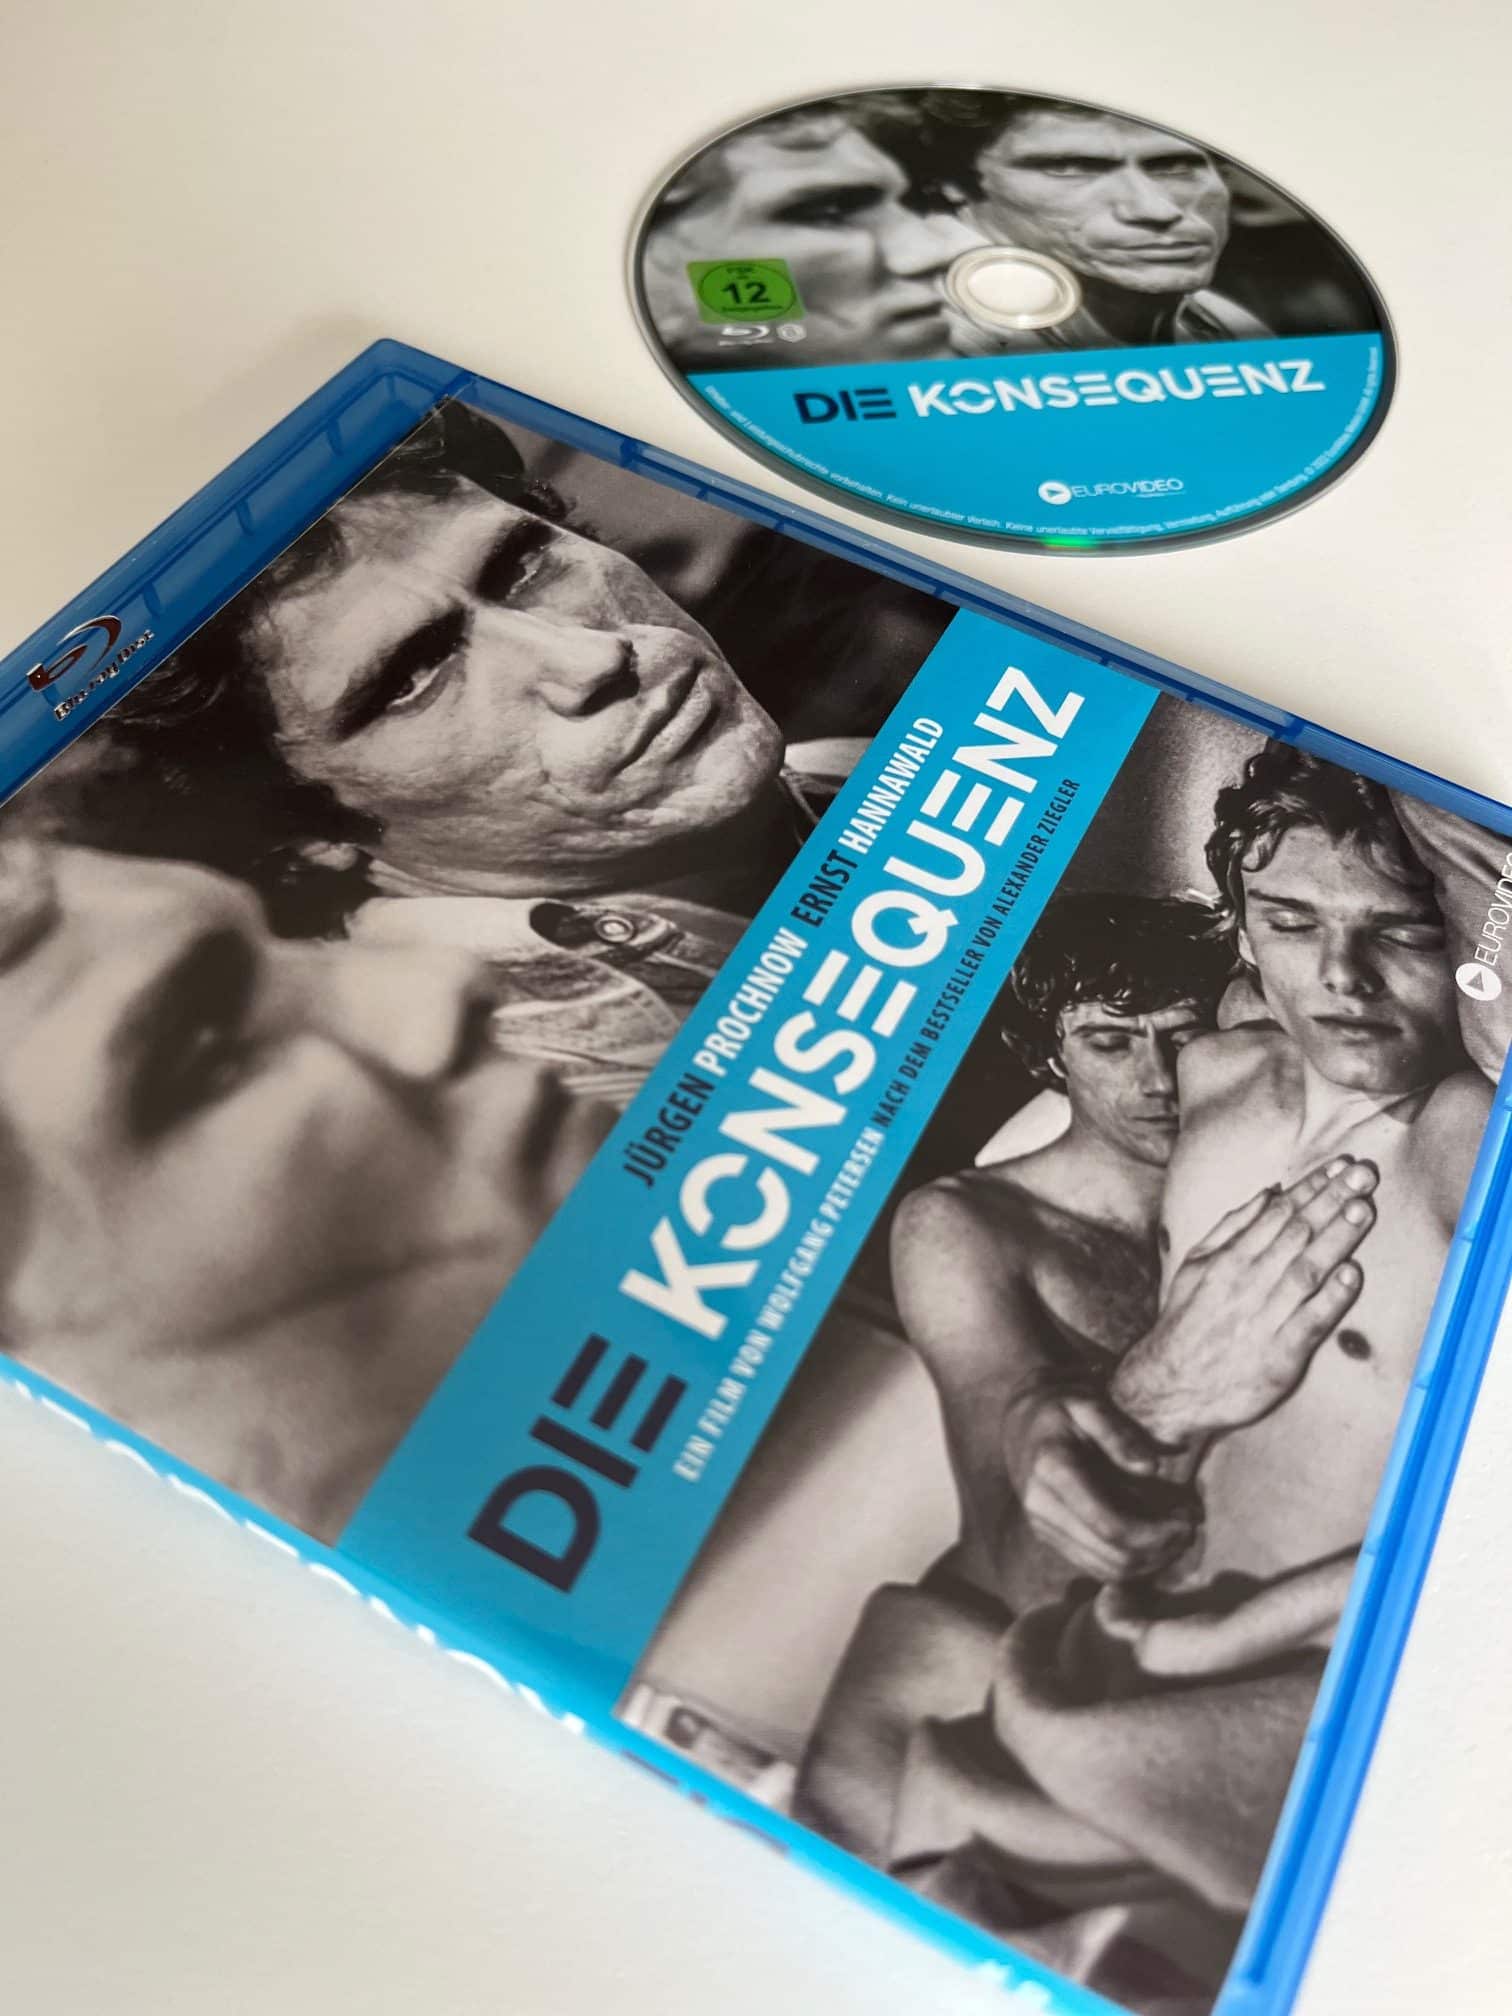 [Review] Die Konsequenz (1977) von Wolfgang Petersen (im Blu-ray-Keep-Case)